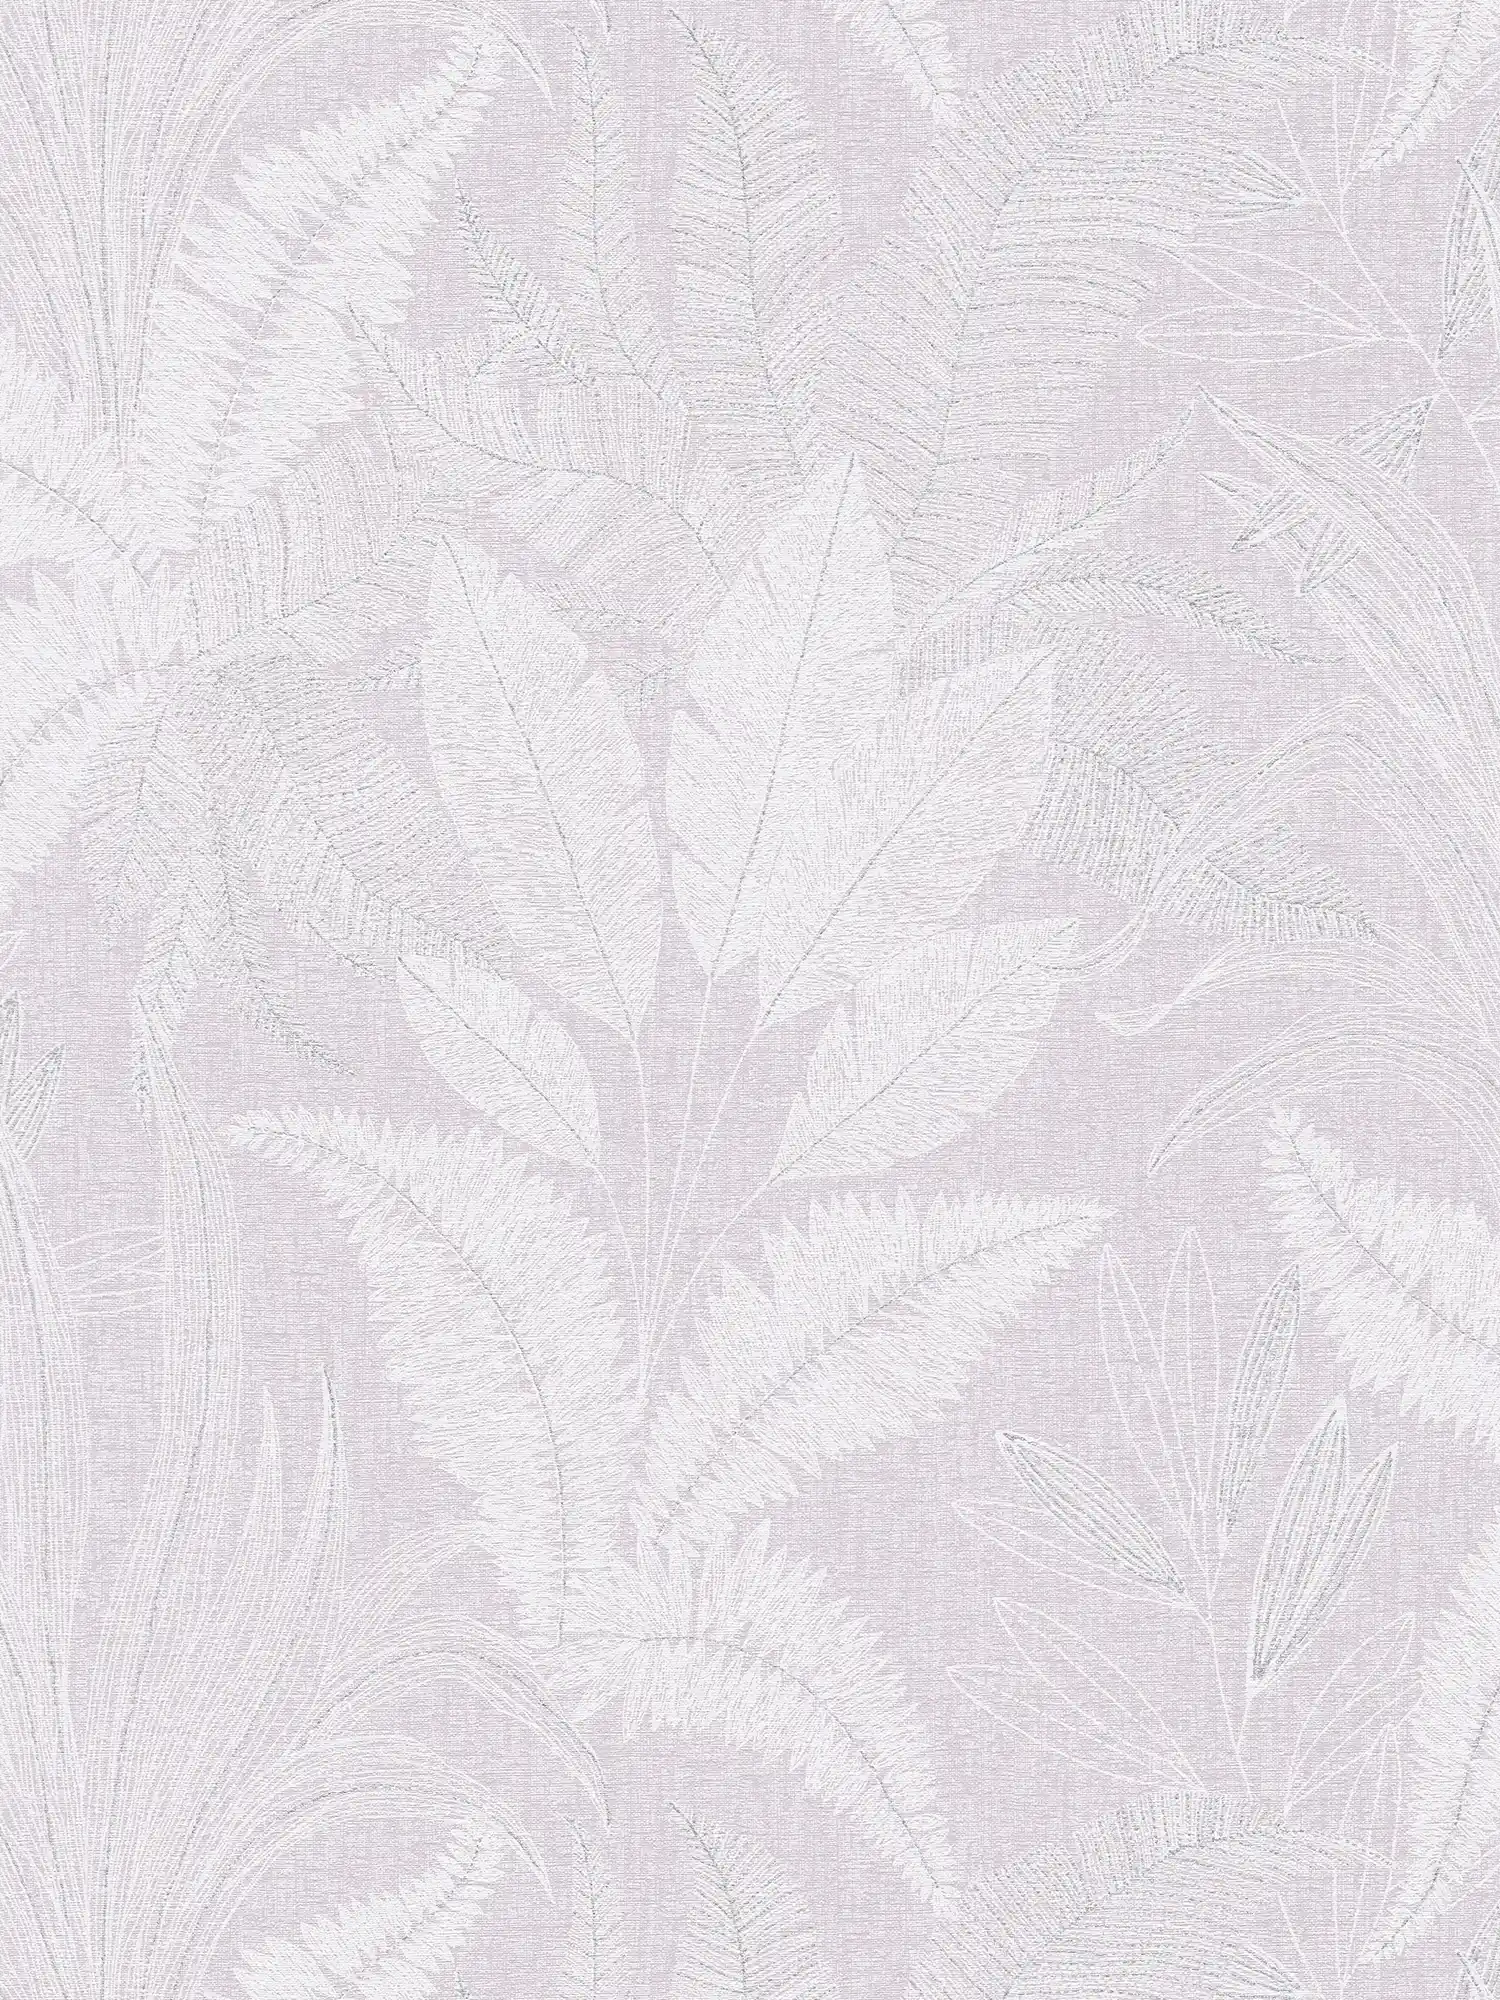 Papel pintado no tejido con motivo de hojas grandes ligeramente texturizado - violeta, blanco, gris
